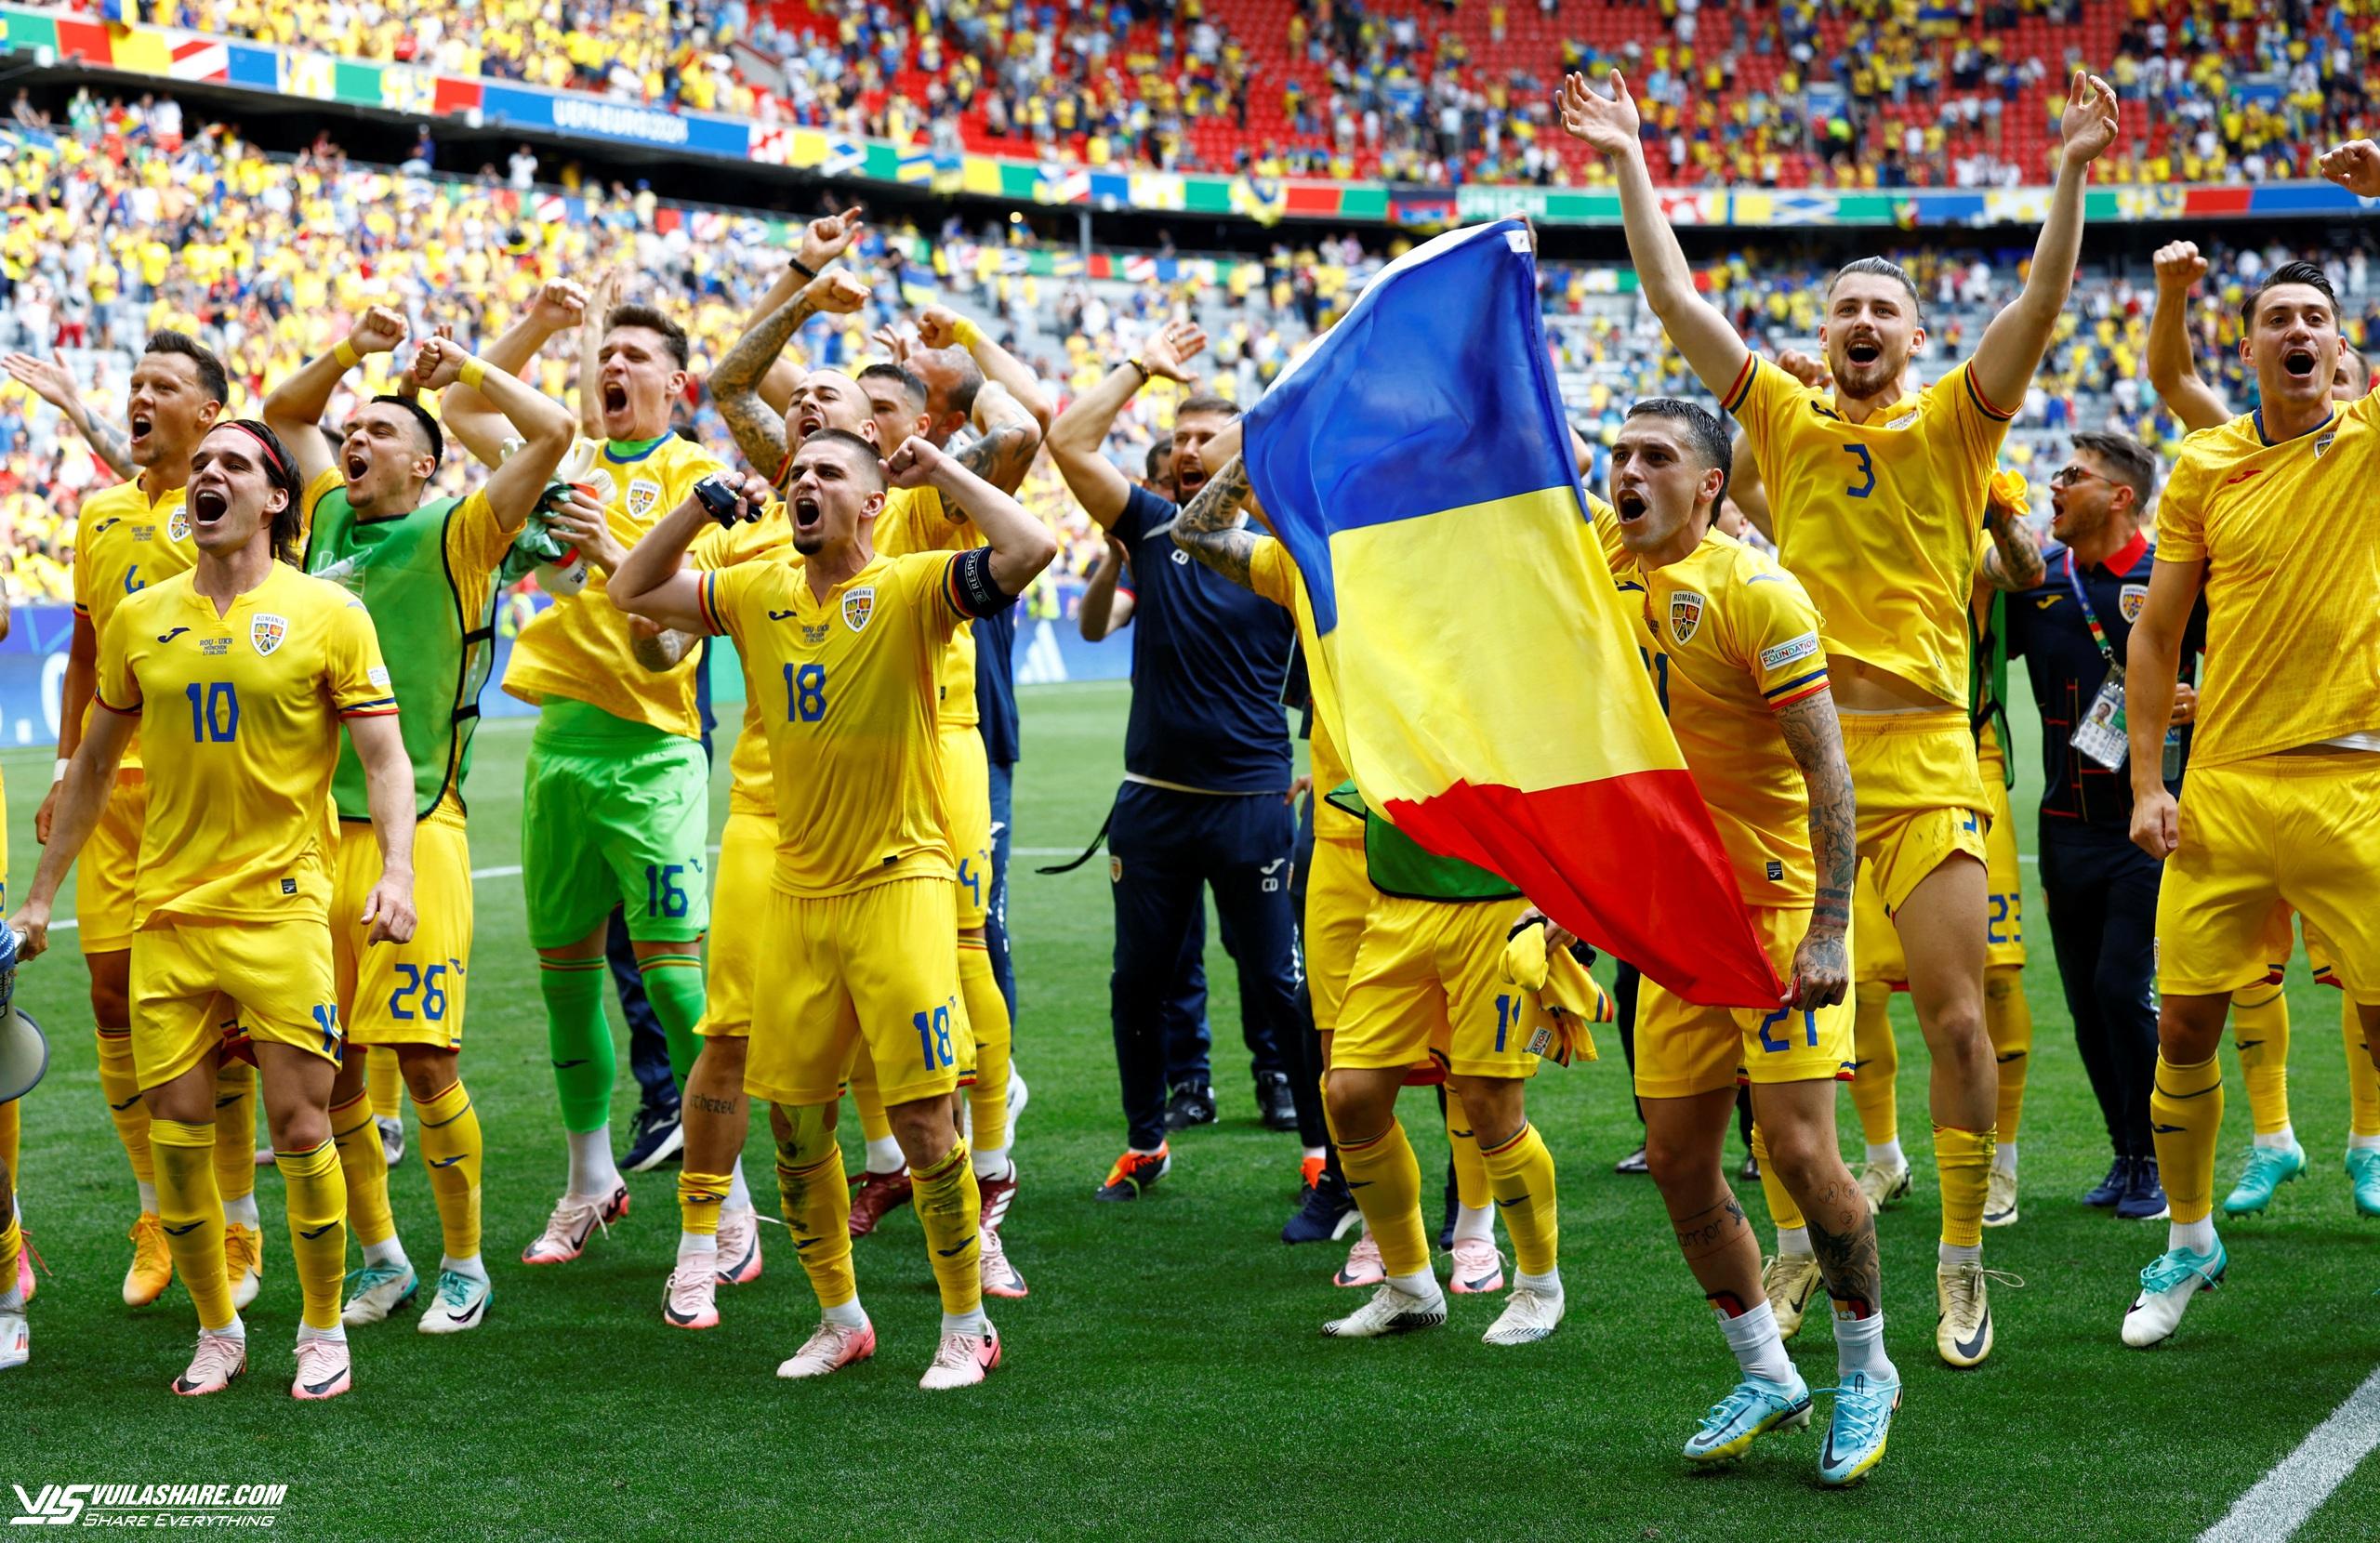 HLV Romania khóc vì quá sung sướng, HLV Ukraine khóc vì quá đau khổ, thế mới là bóng đá- Ảnh 2.